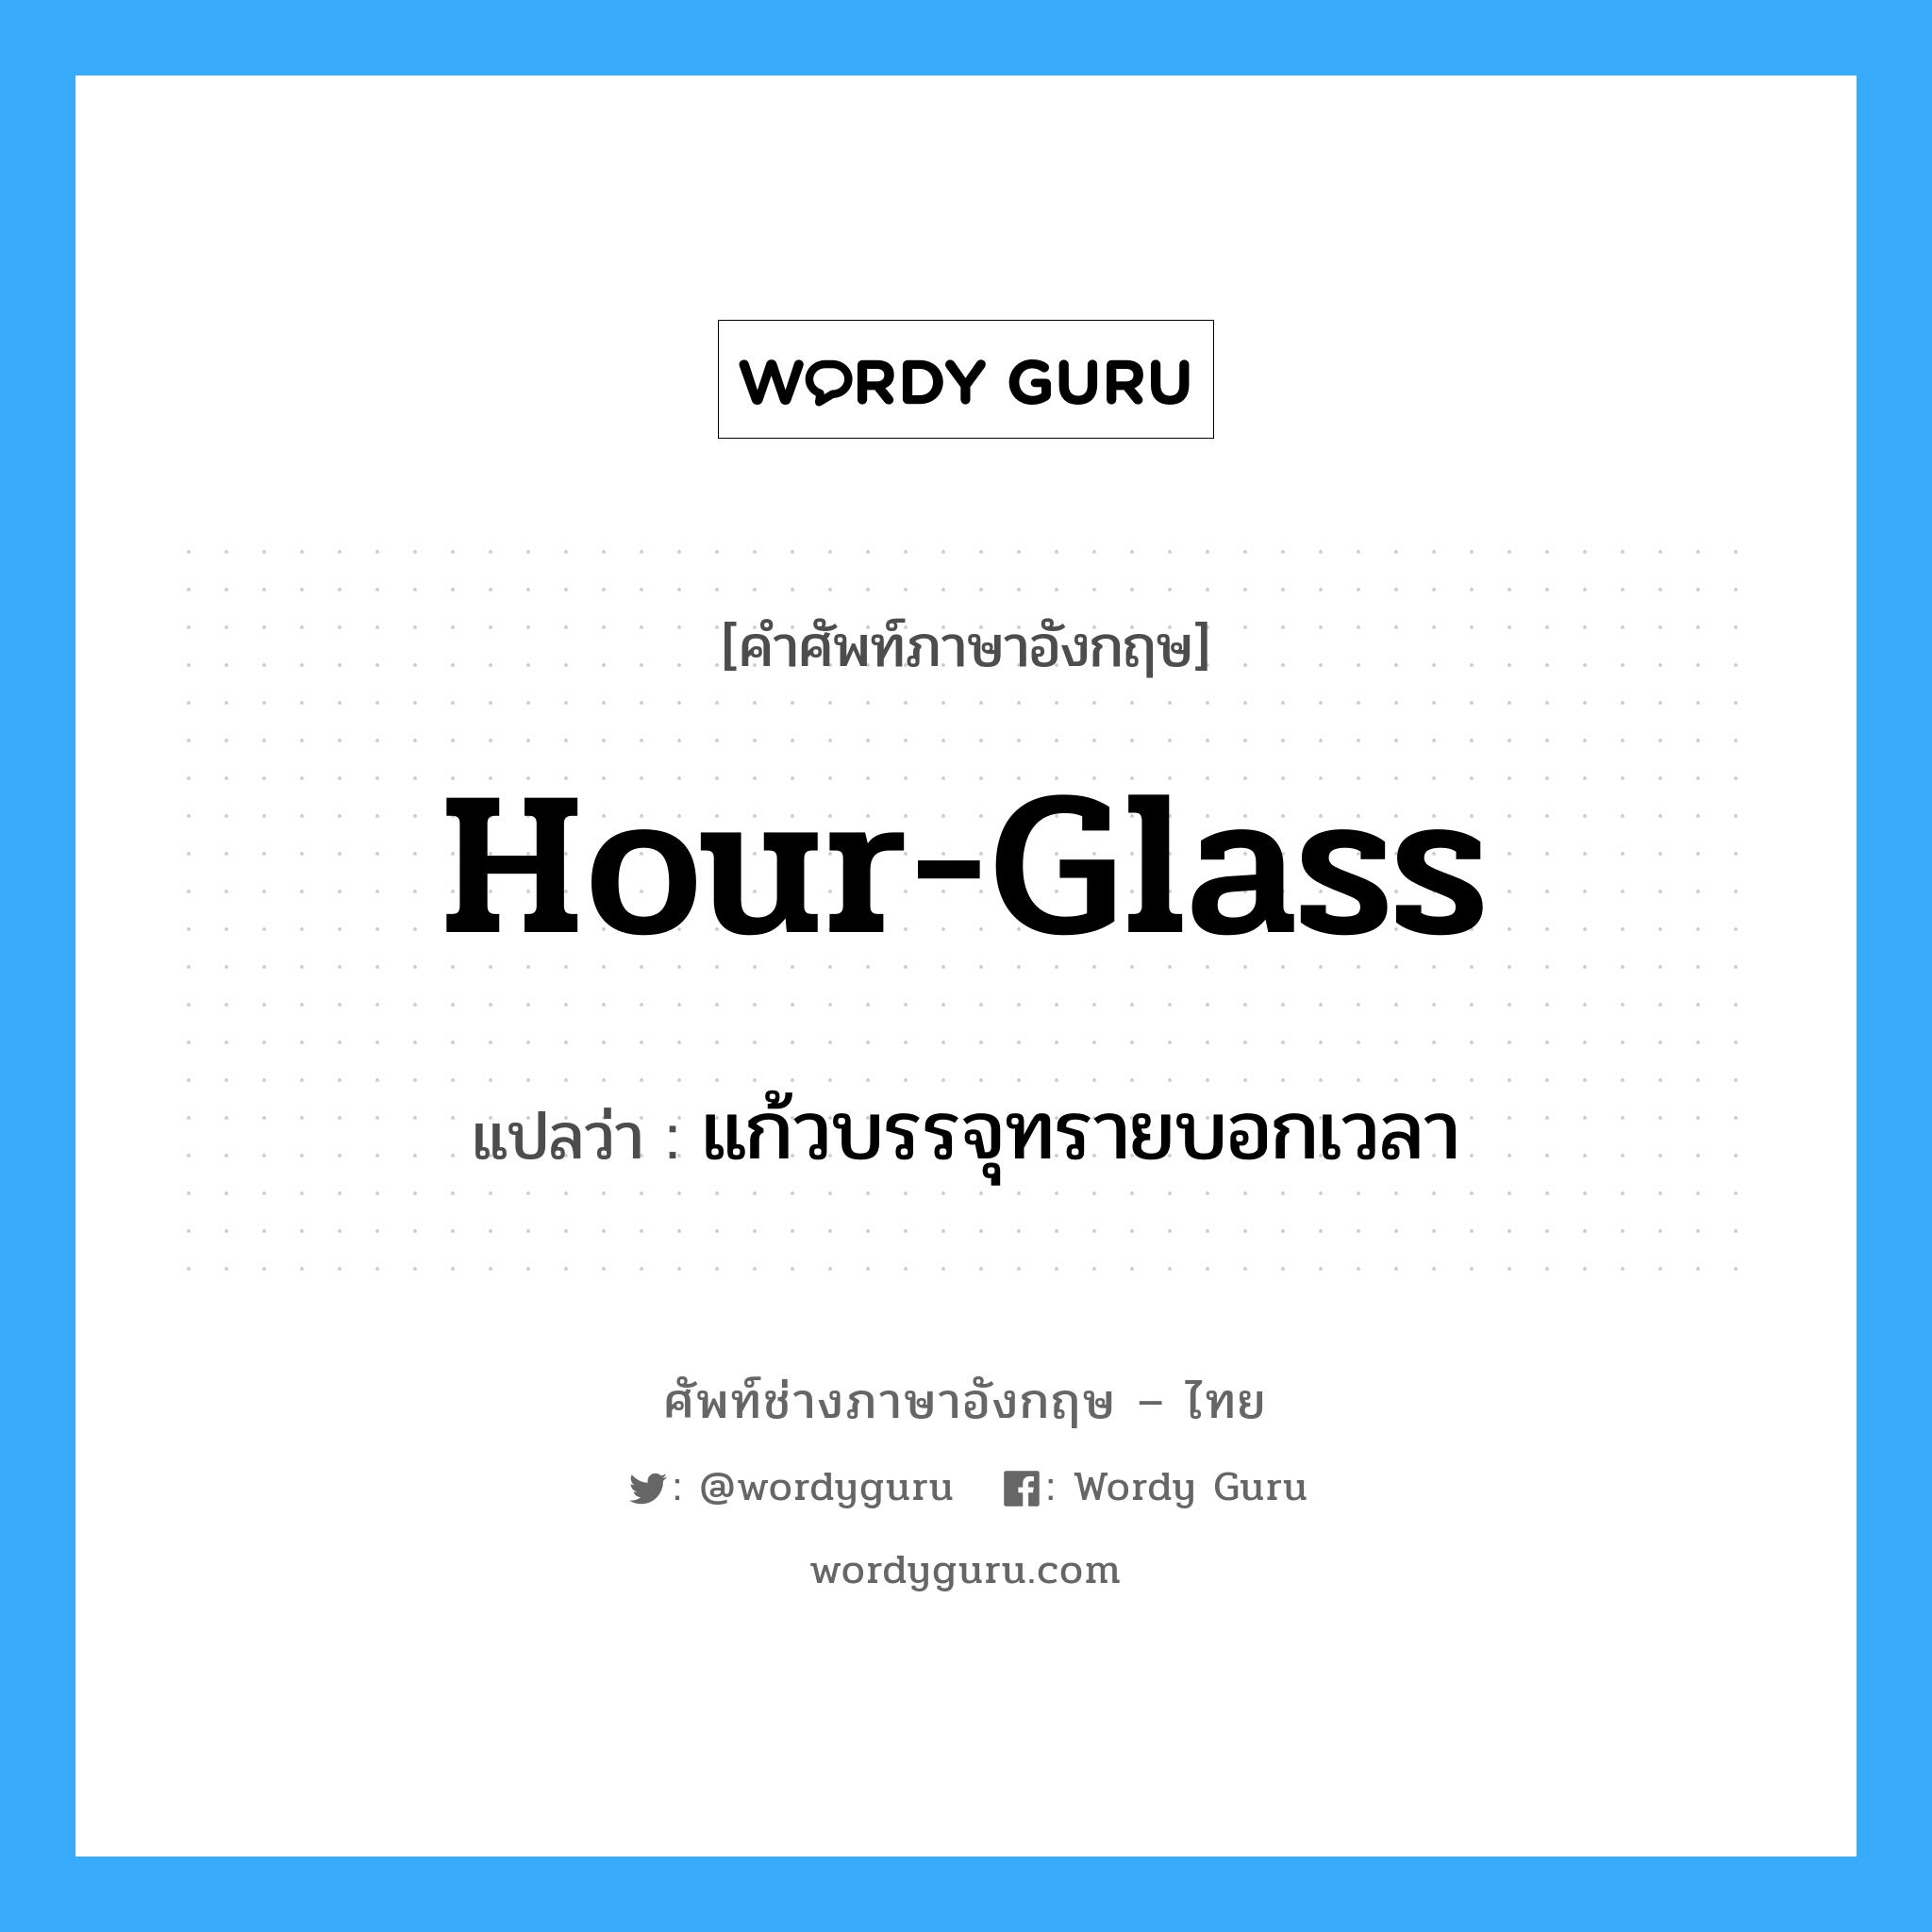 แก้วบรรจุทรายบอกเวลา ภาษาอังกฤษ?, คำศัพท์ช่างภาษาอังกฤษ - ไทย แก้วบรรจุทรายบอกเวลา คำศัพท์ภาษาอังกฤษ แก้วบรรจุทรายบอกเวลา แปลว่า hour-glass